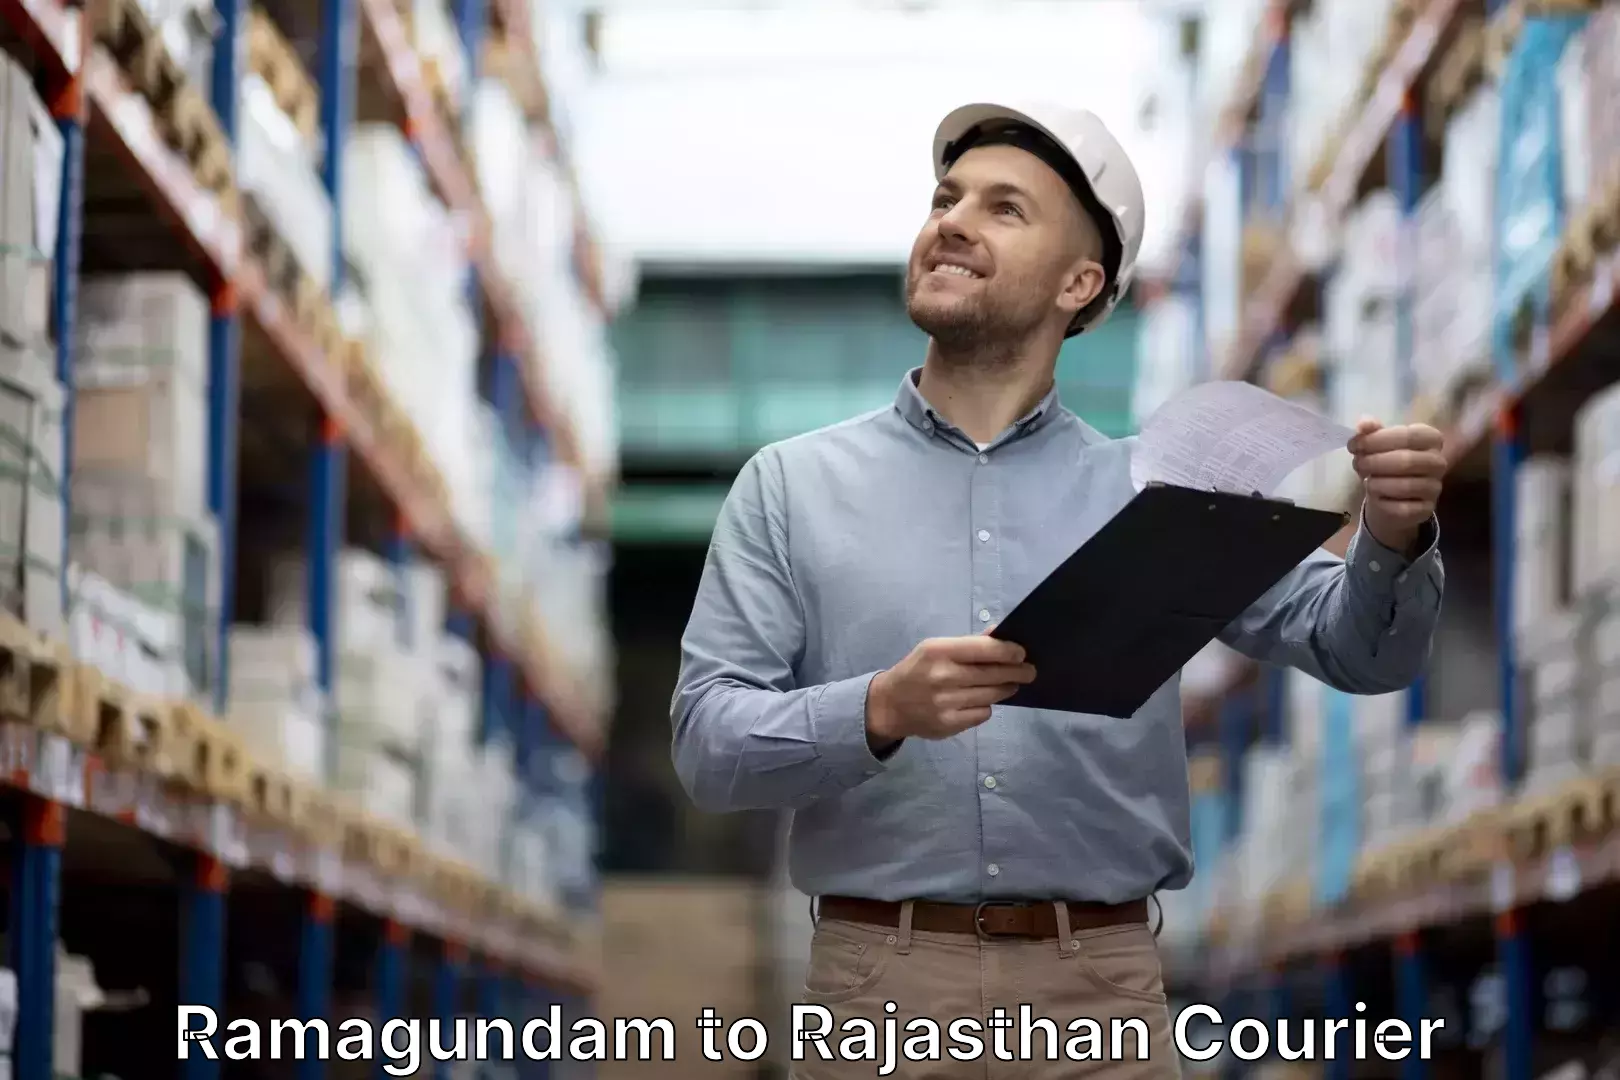 Baggage transport estimate Ramagundam to Rajasthan